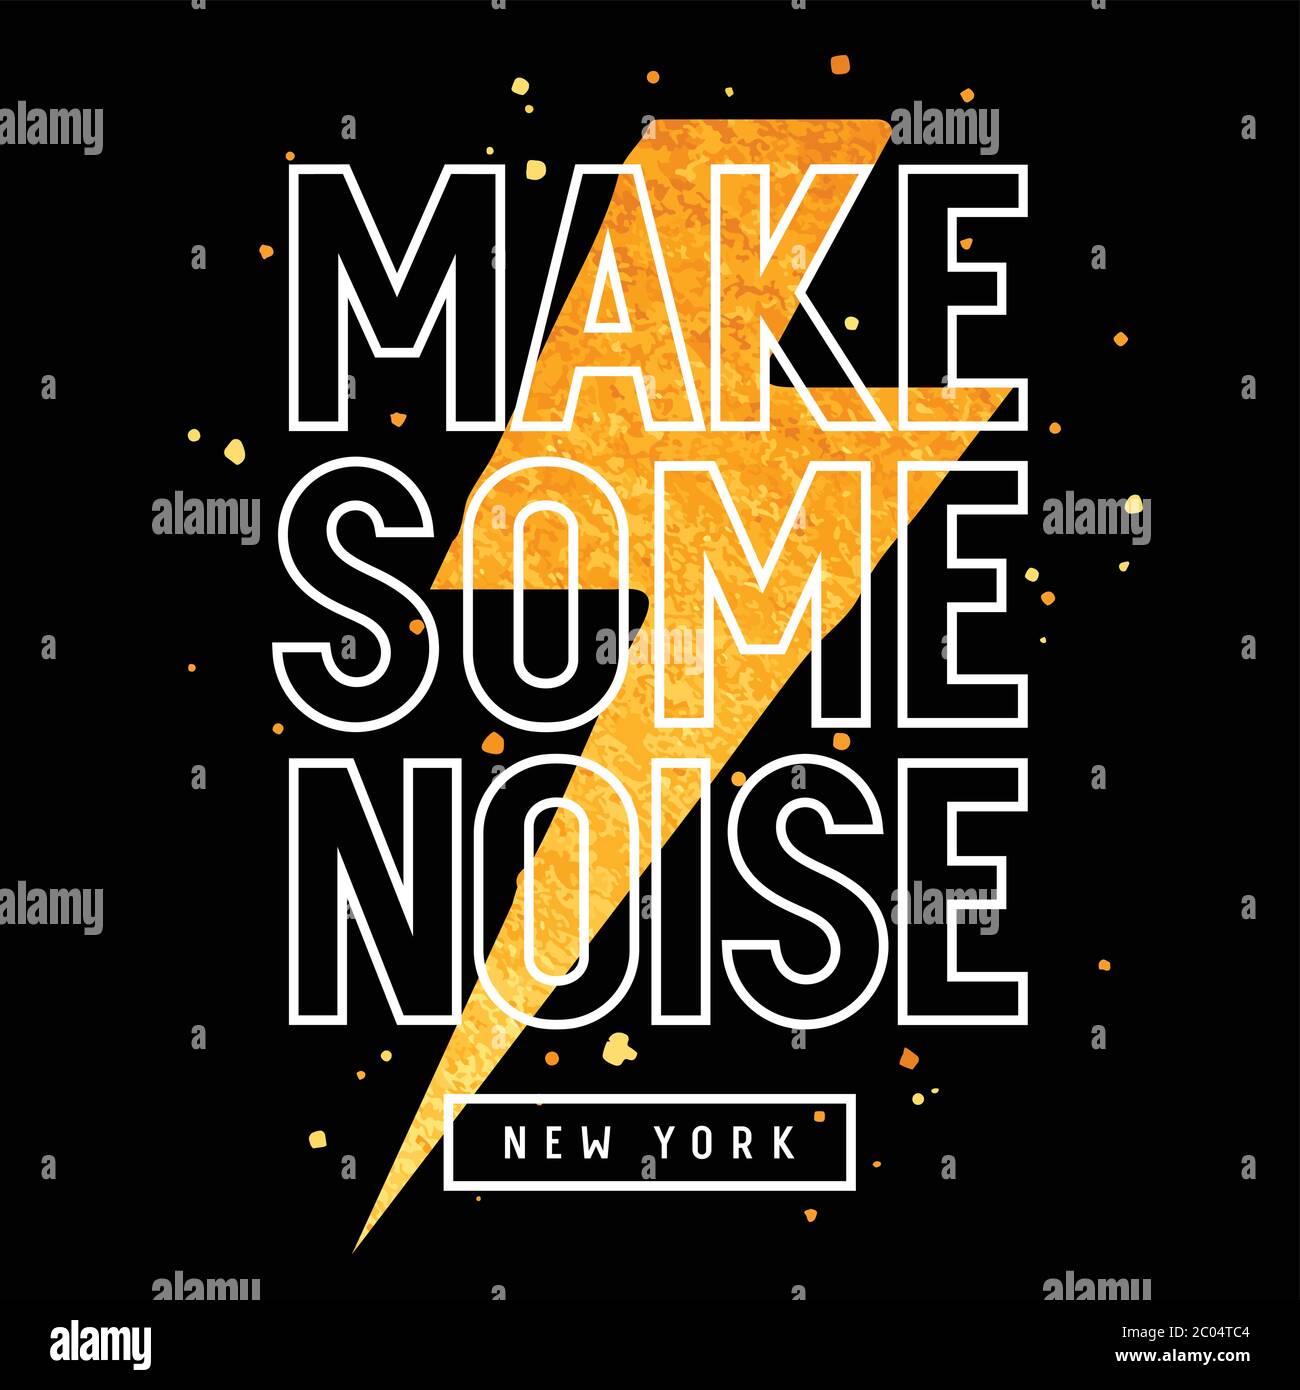 Vektor-Illustration mit goldener Glitzerblitzung und trendigem Slogan auf Musik-Thema für T-Shirt-Grafiken Stock Vektor